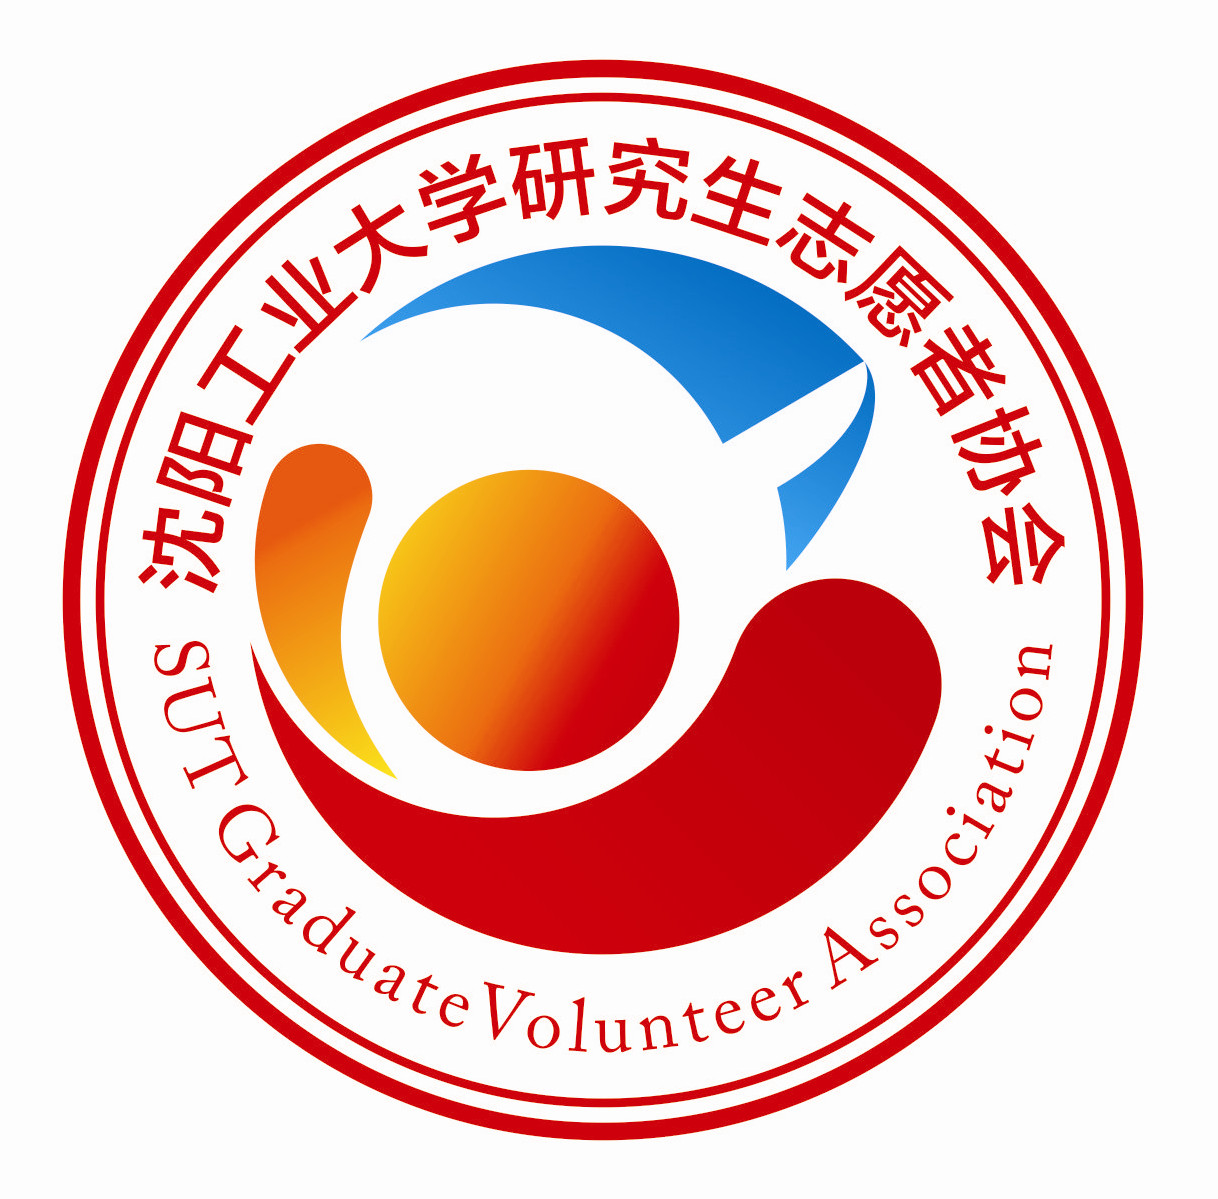 瀋陽工業大學研究生志願者協會